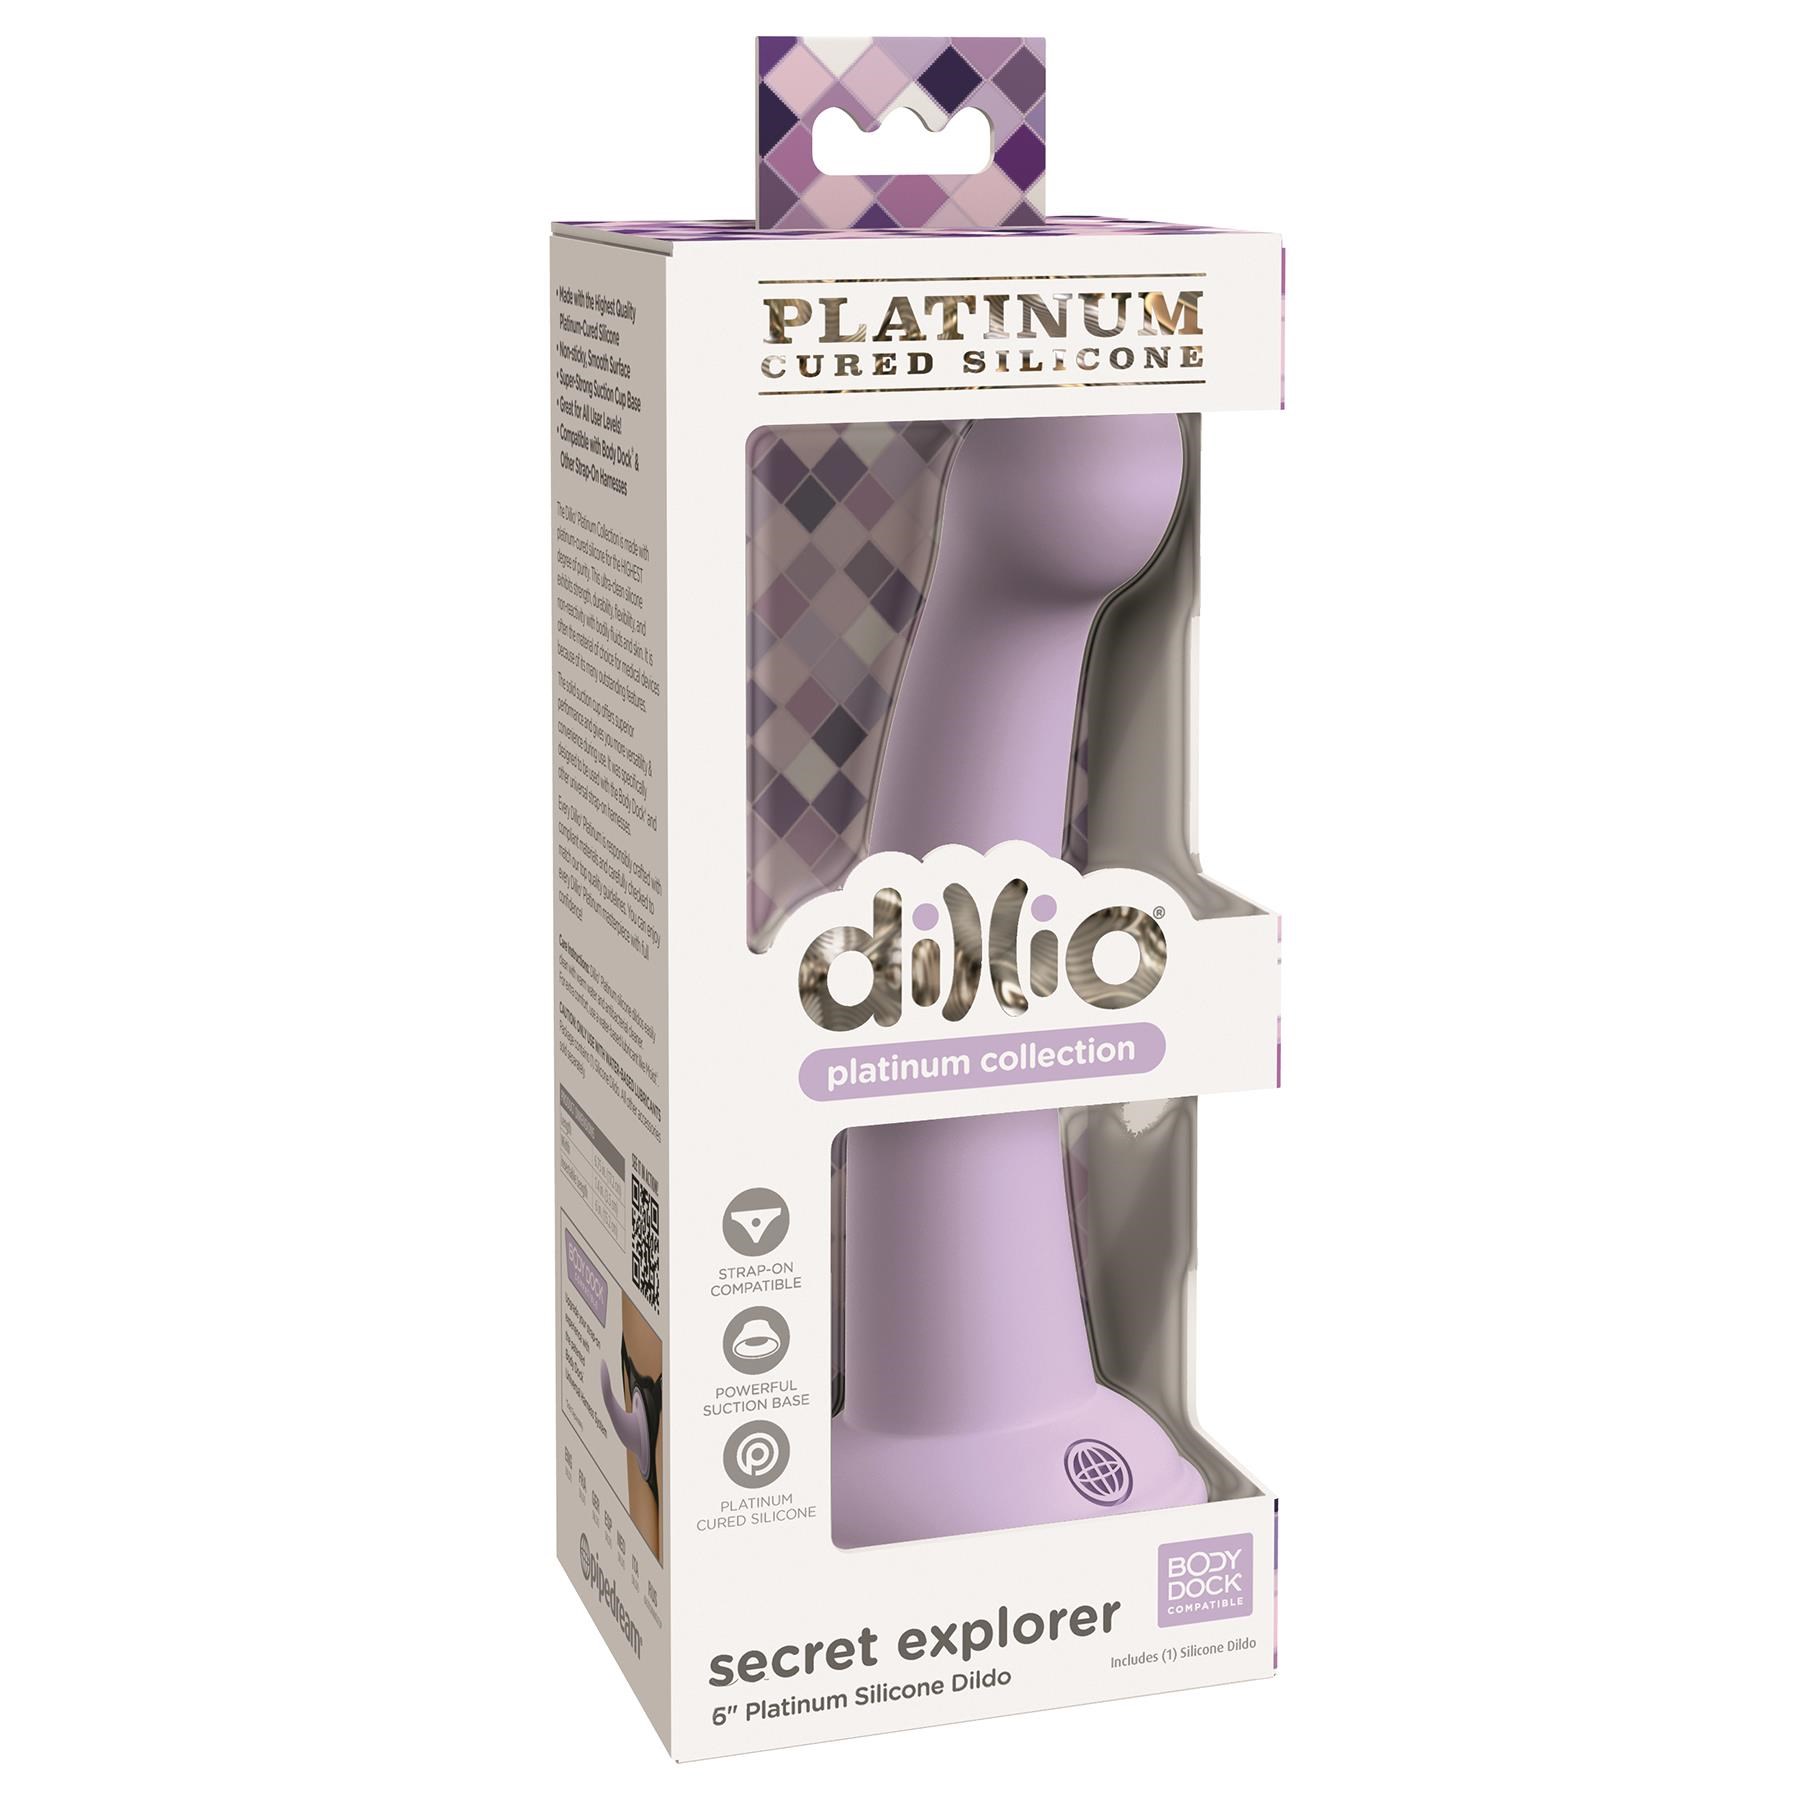 Dillio Platinum Secret Explore Dildo - Packaging Shot